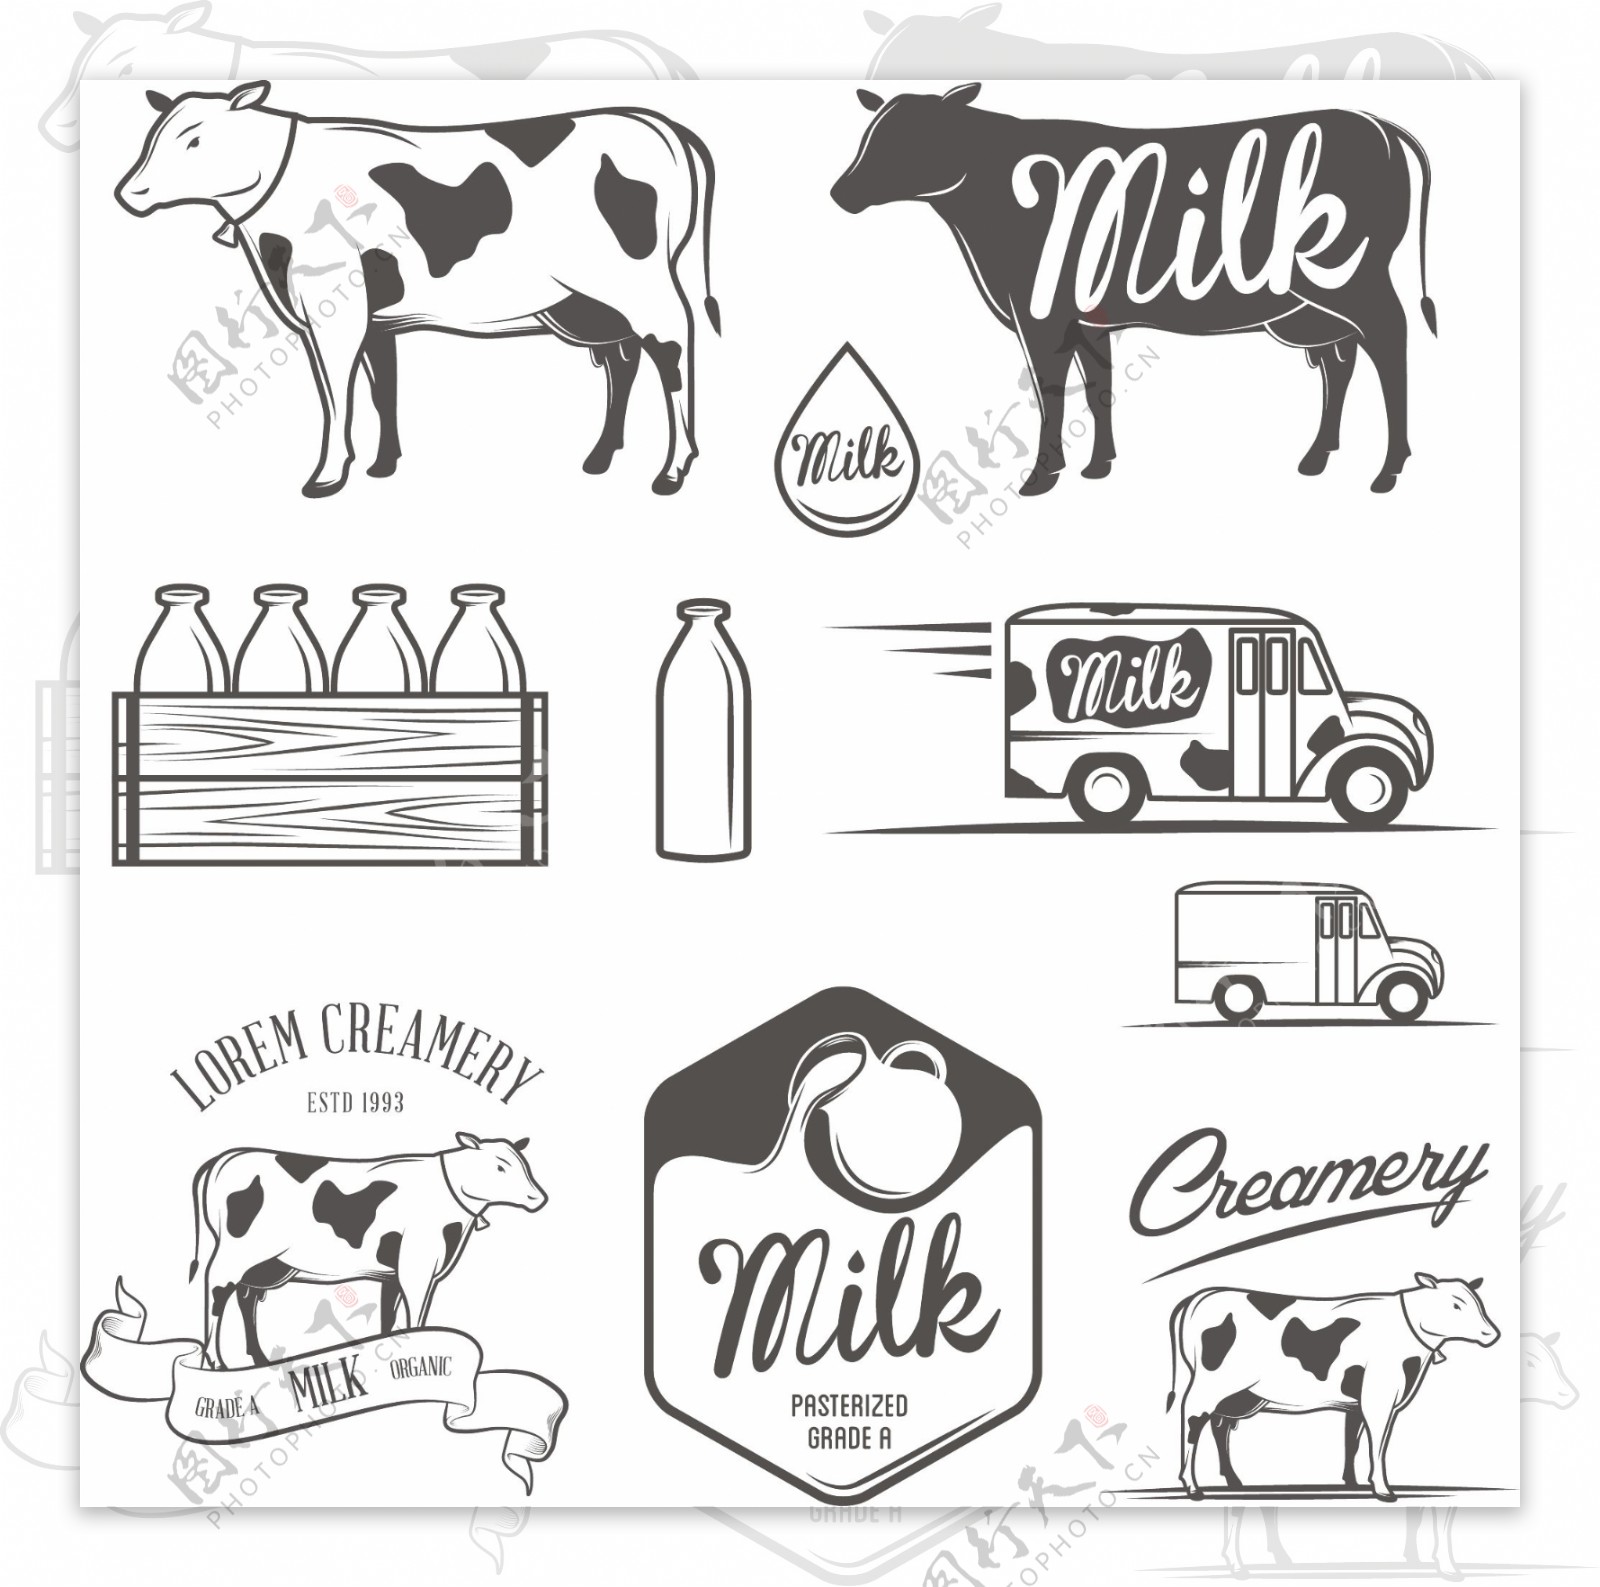 手绘牛奶图标设计